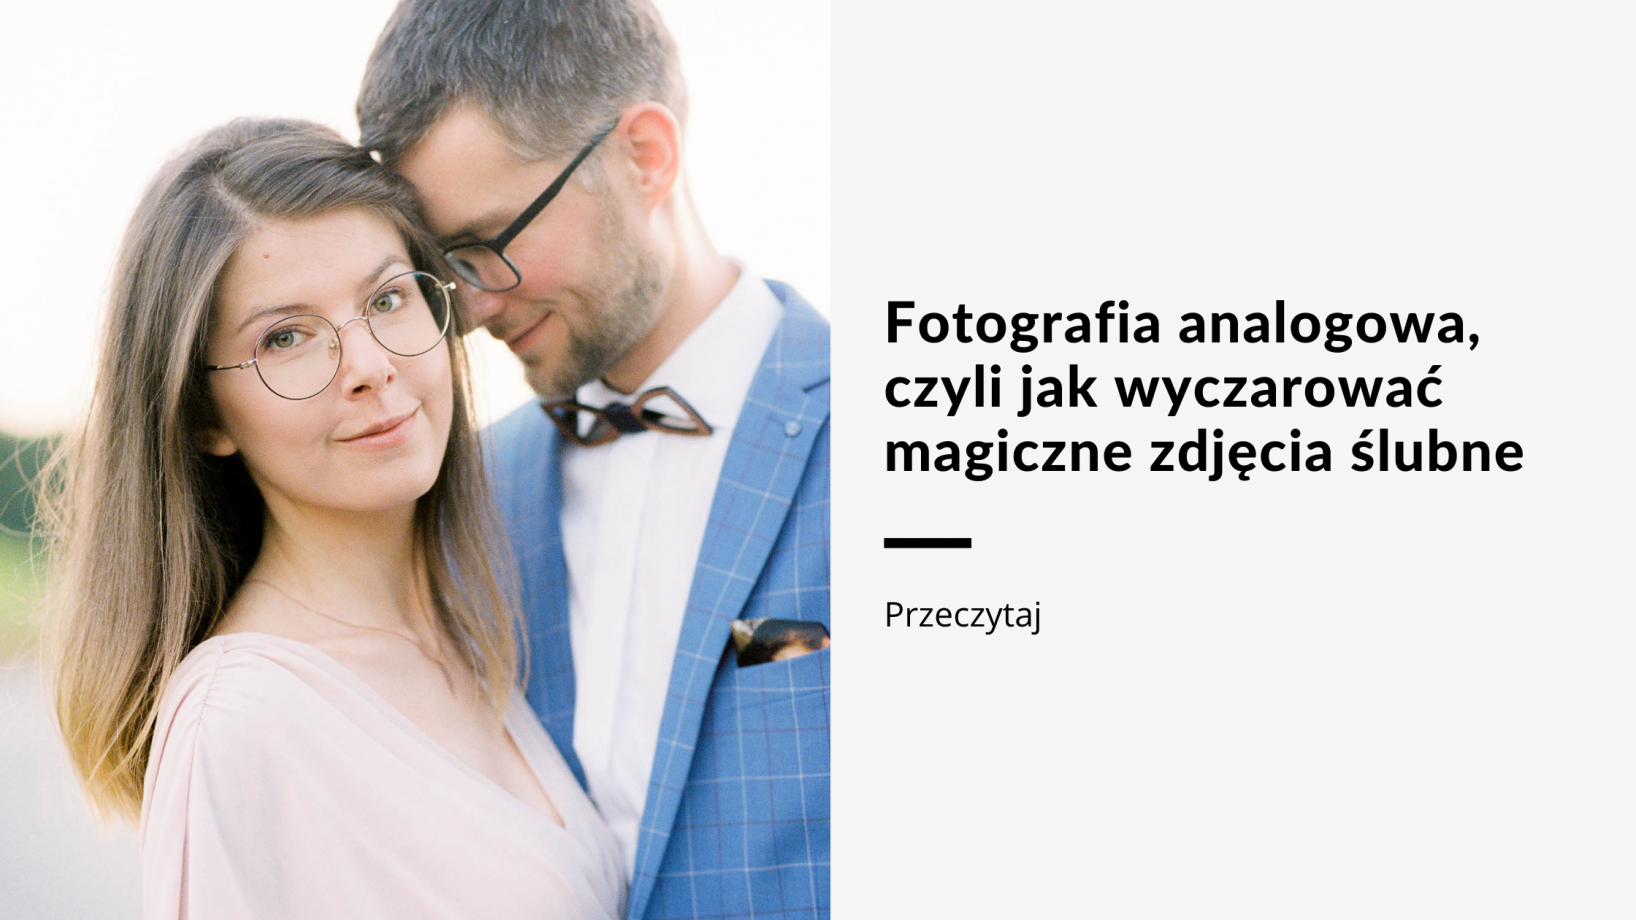 fotografia-analogowa-czyli-jak-wyczarowac-magiczne-zdjecia-slubne polina-rytova blog fotograf